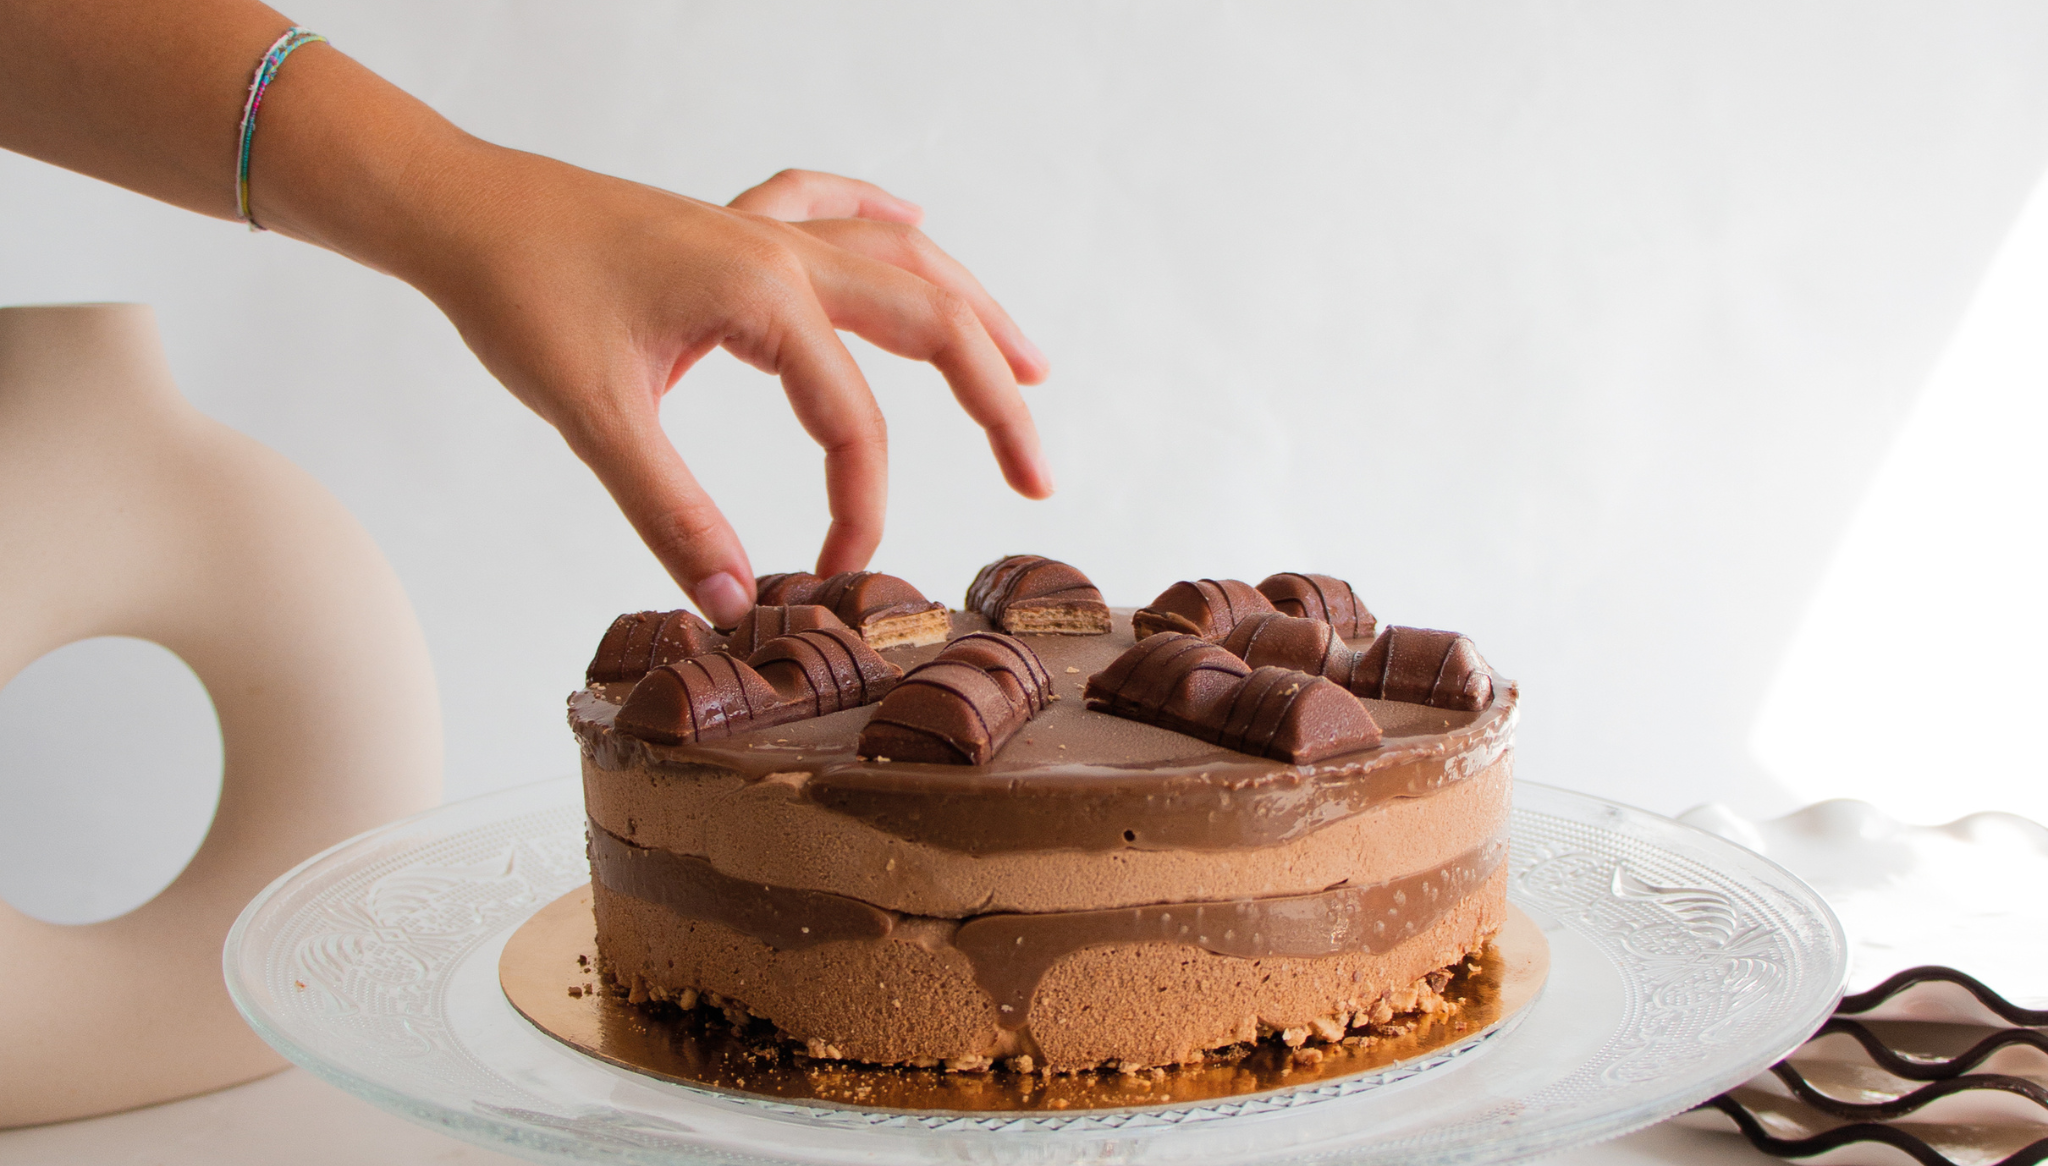 Non restare senza provare l'irresistibile torta Kinder Bueno - Dénia.com